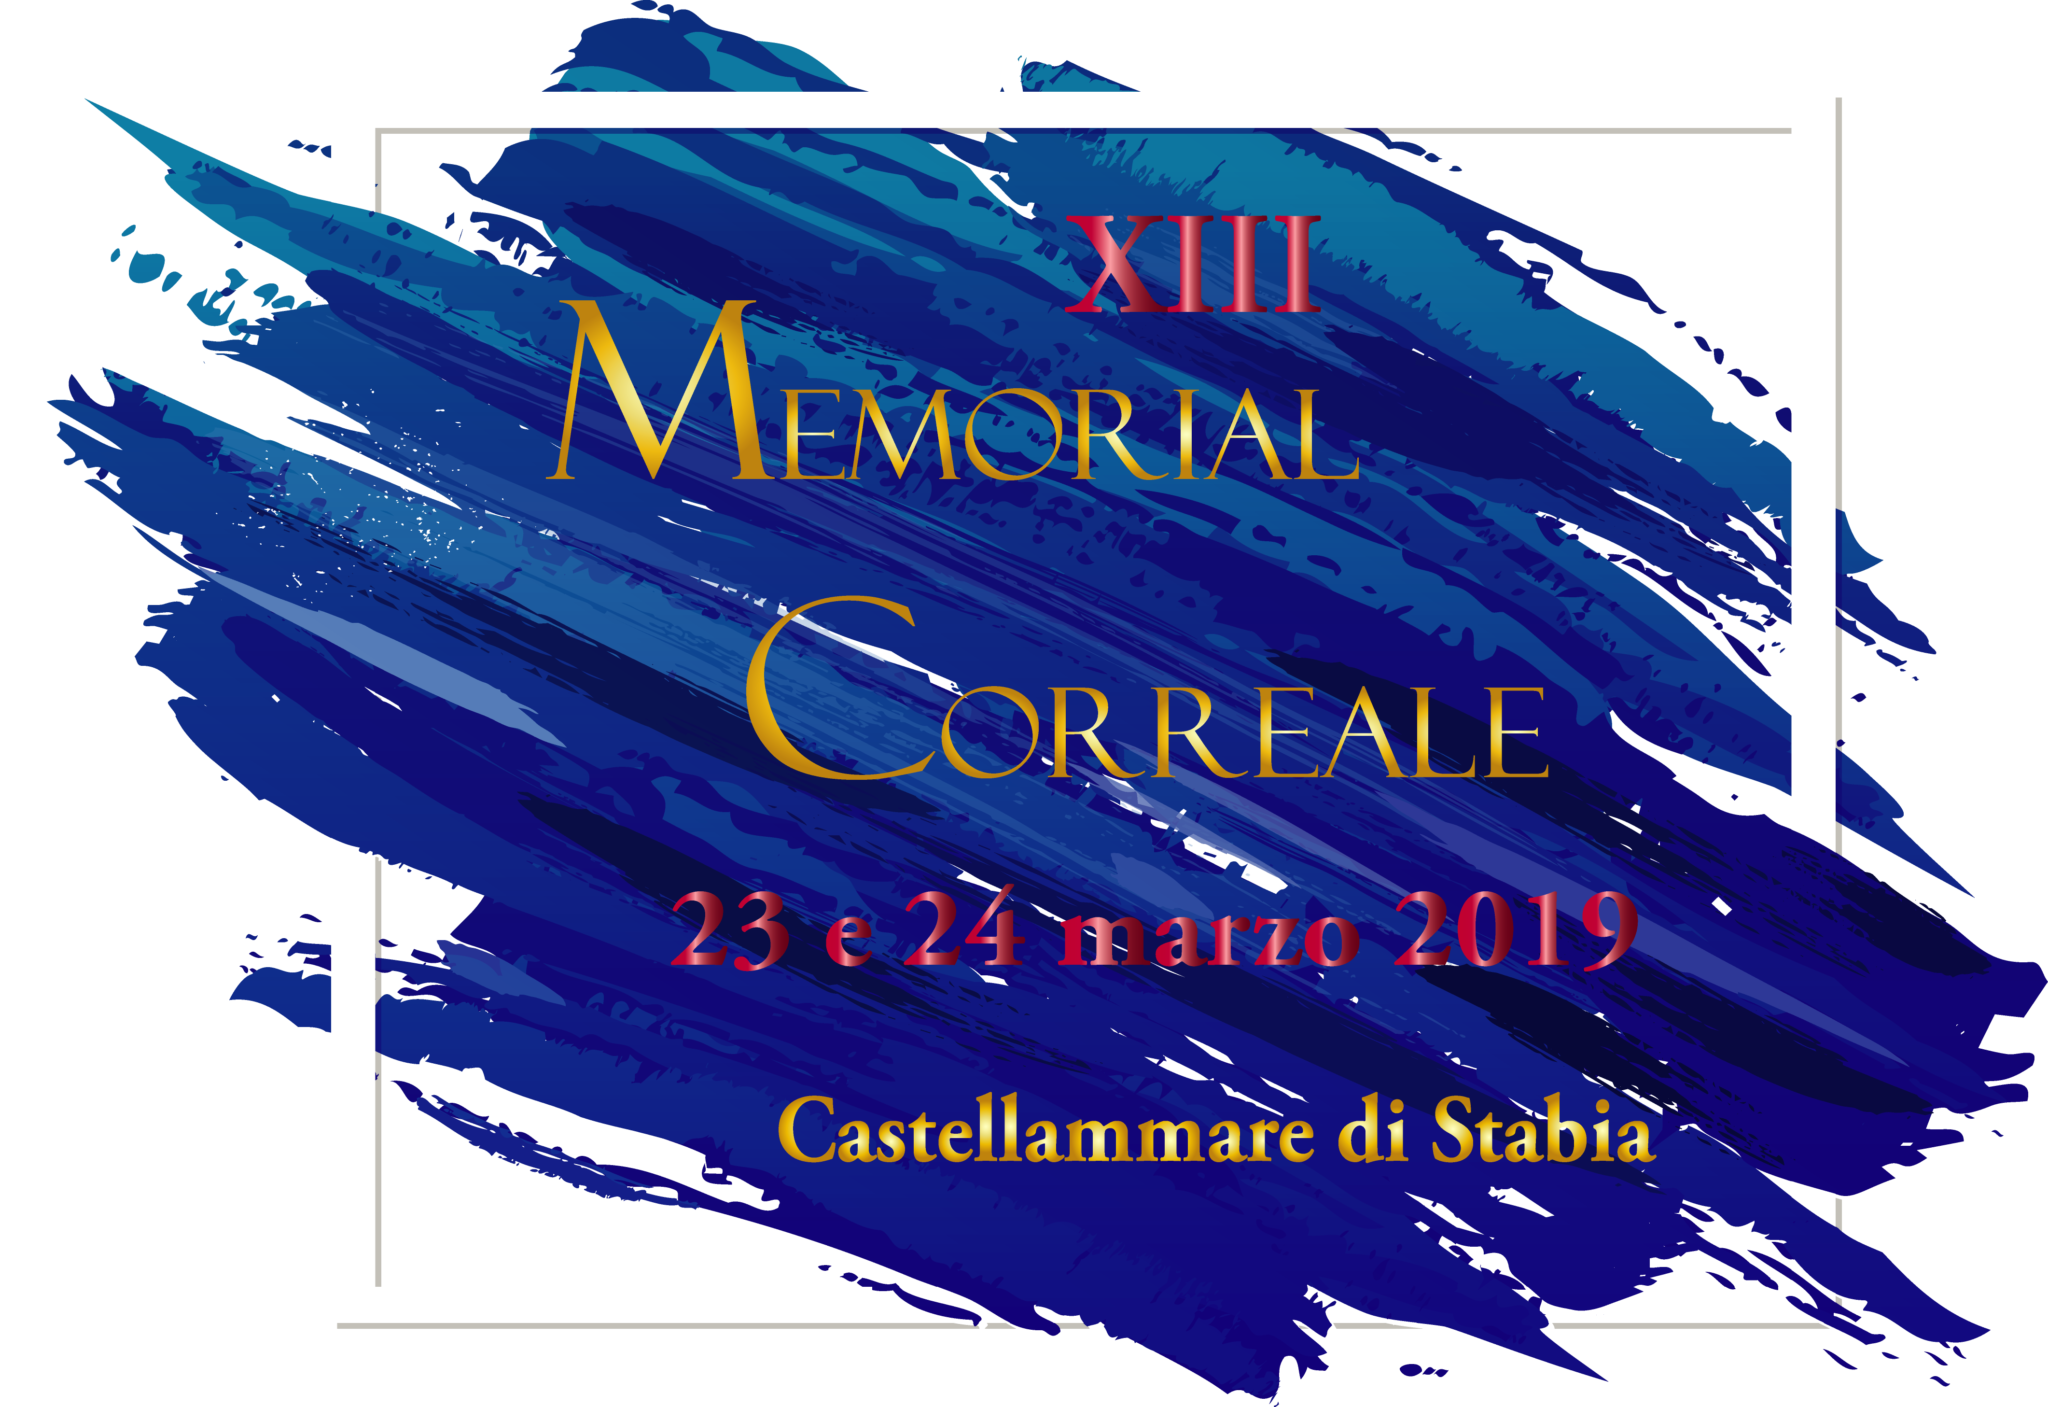 Memorial Correale: Castellammare di Stabia, 25 anni da protagonista nel collezionismo nazionale